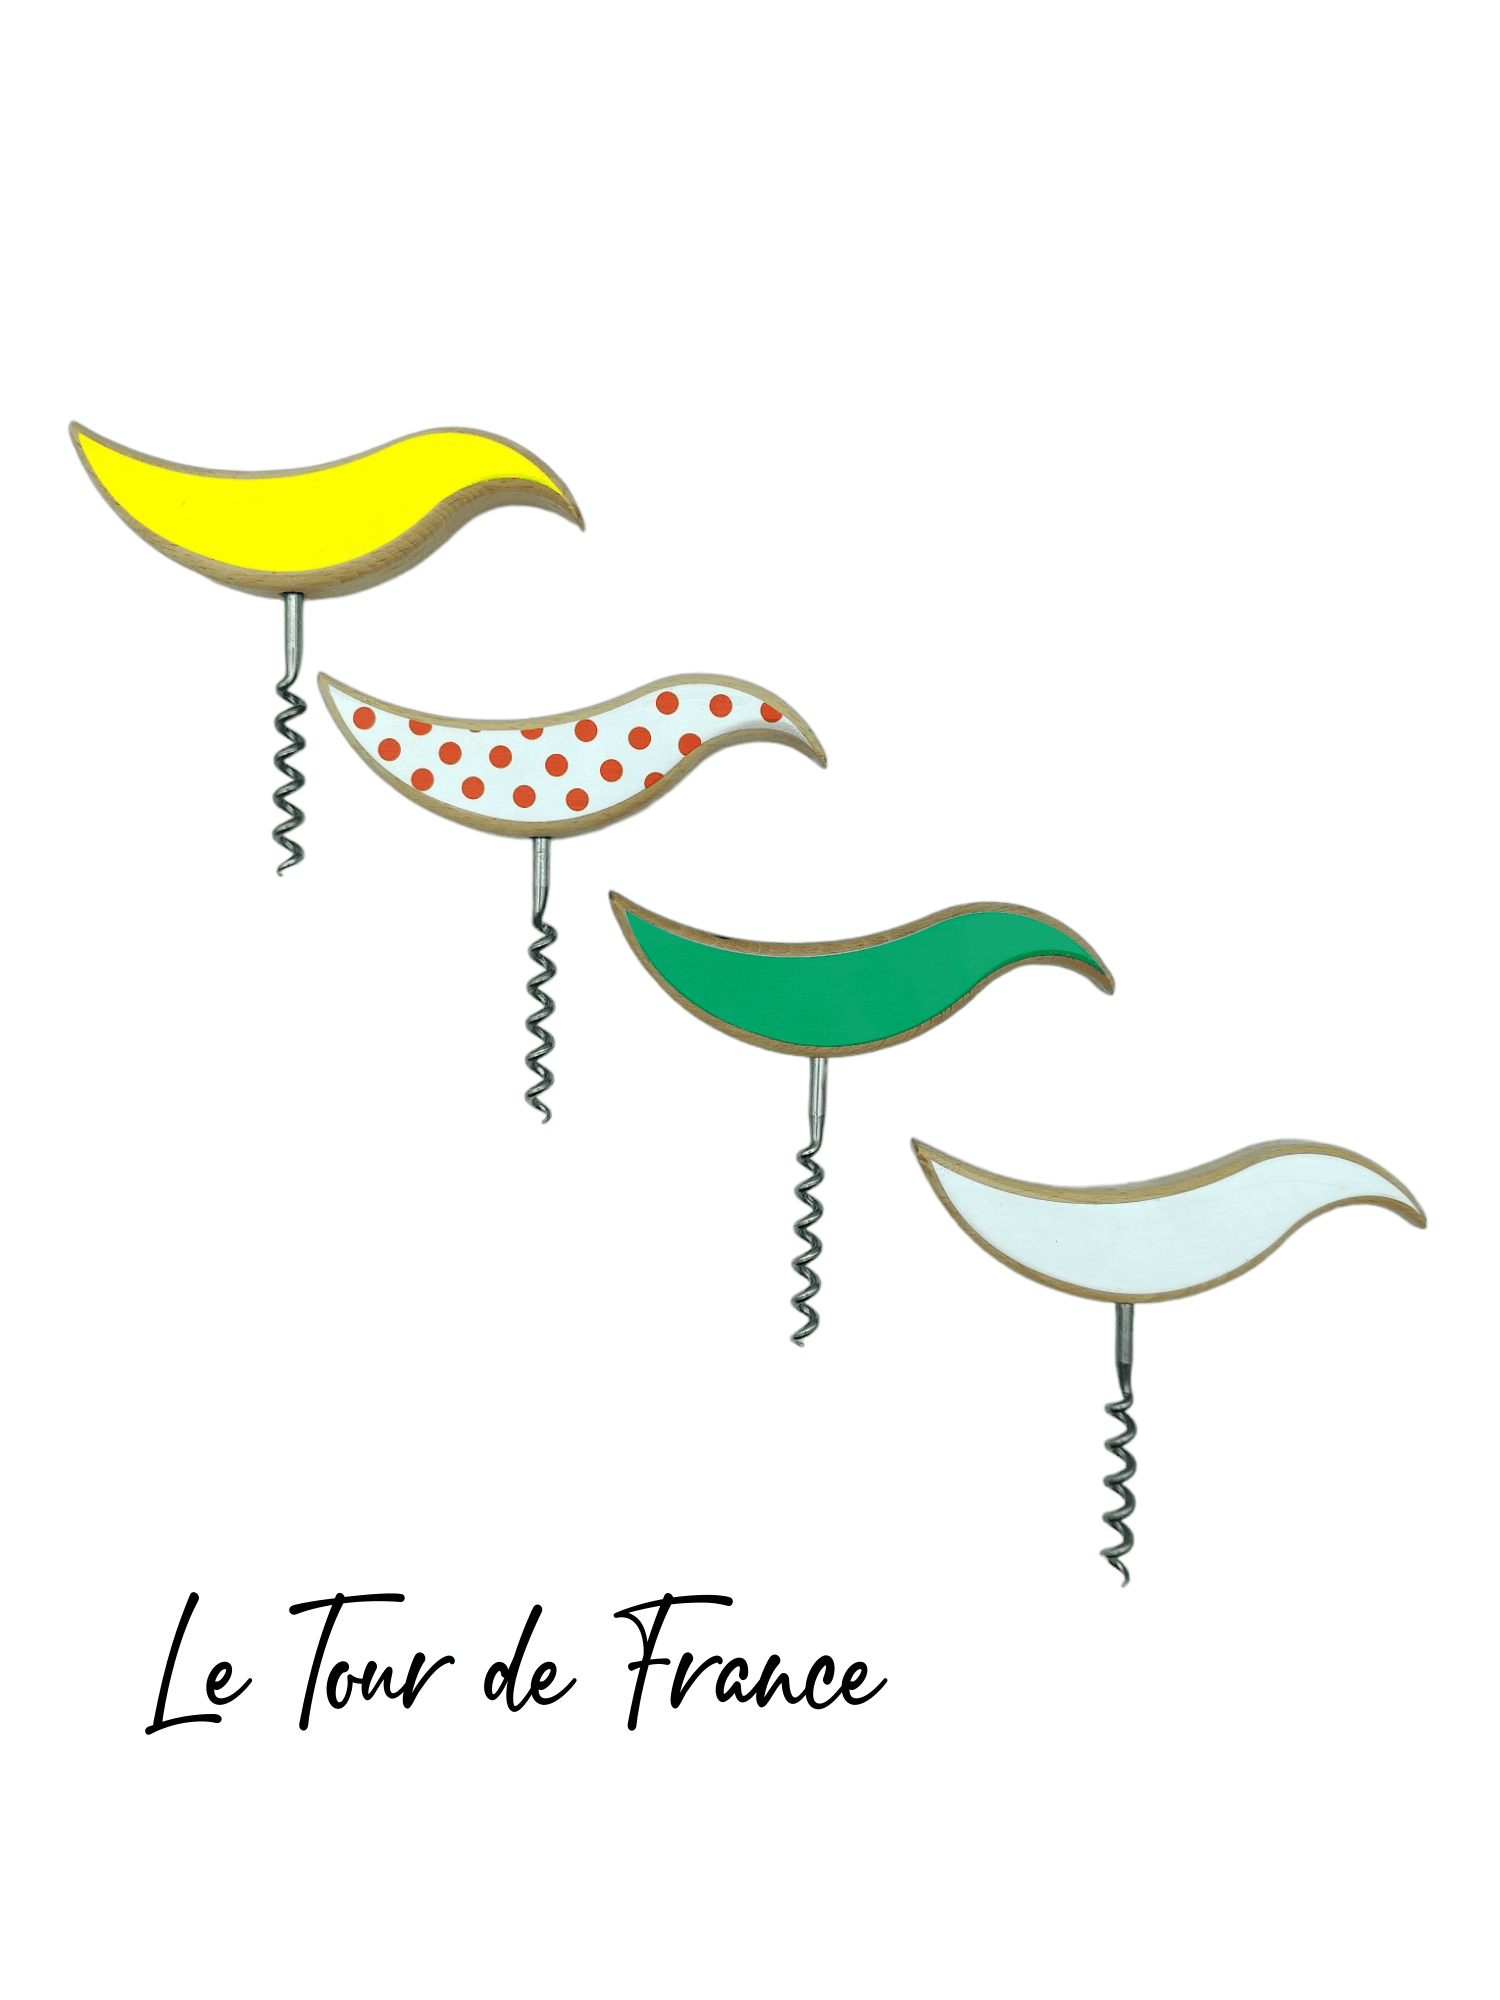 TIRE BOUCHON JEREM CREATION FABRICATION TOUR DE FRANCE (1)